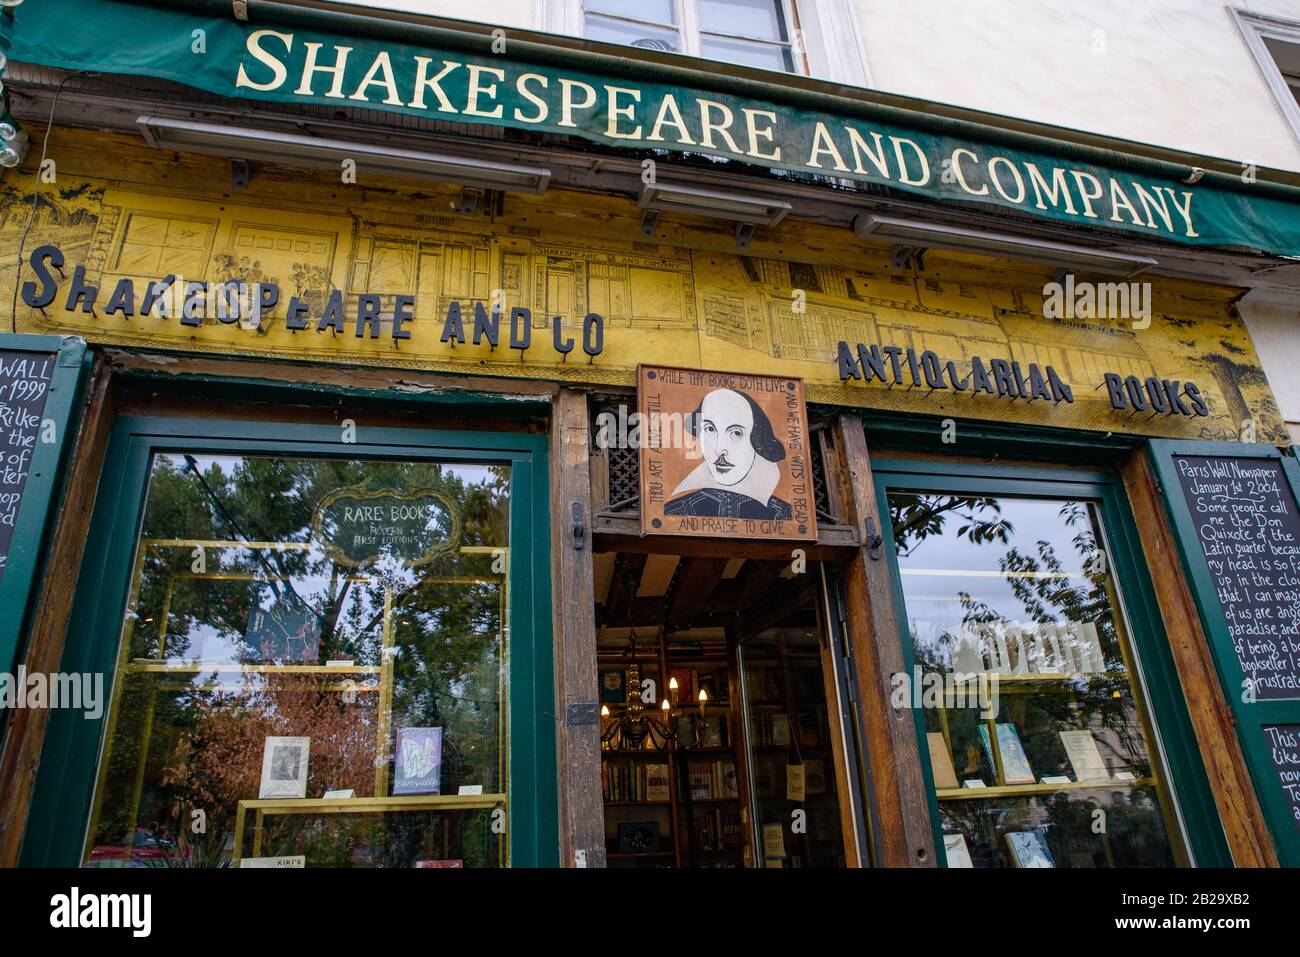 Shakespeare and Company, les célèbres librairies de langue anglaise à Paris, France Banque D'Images